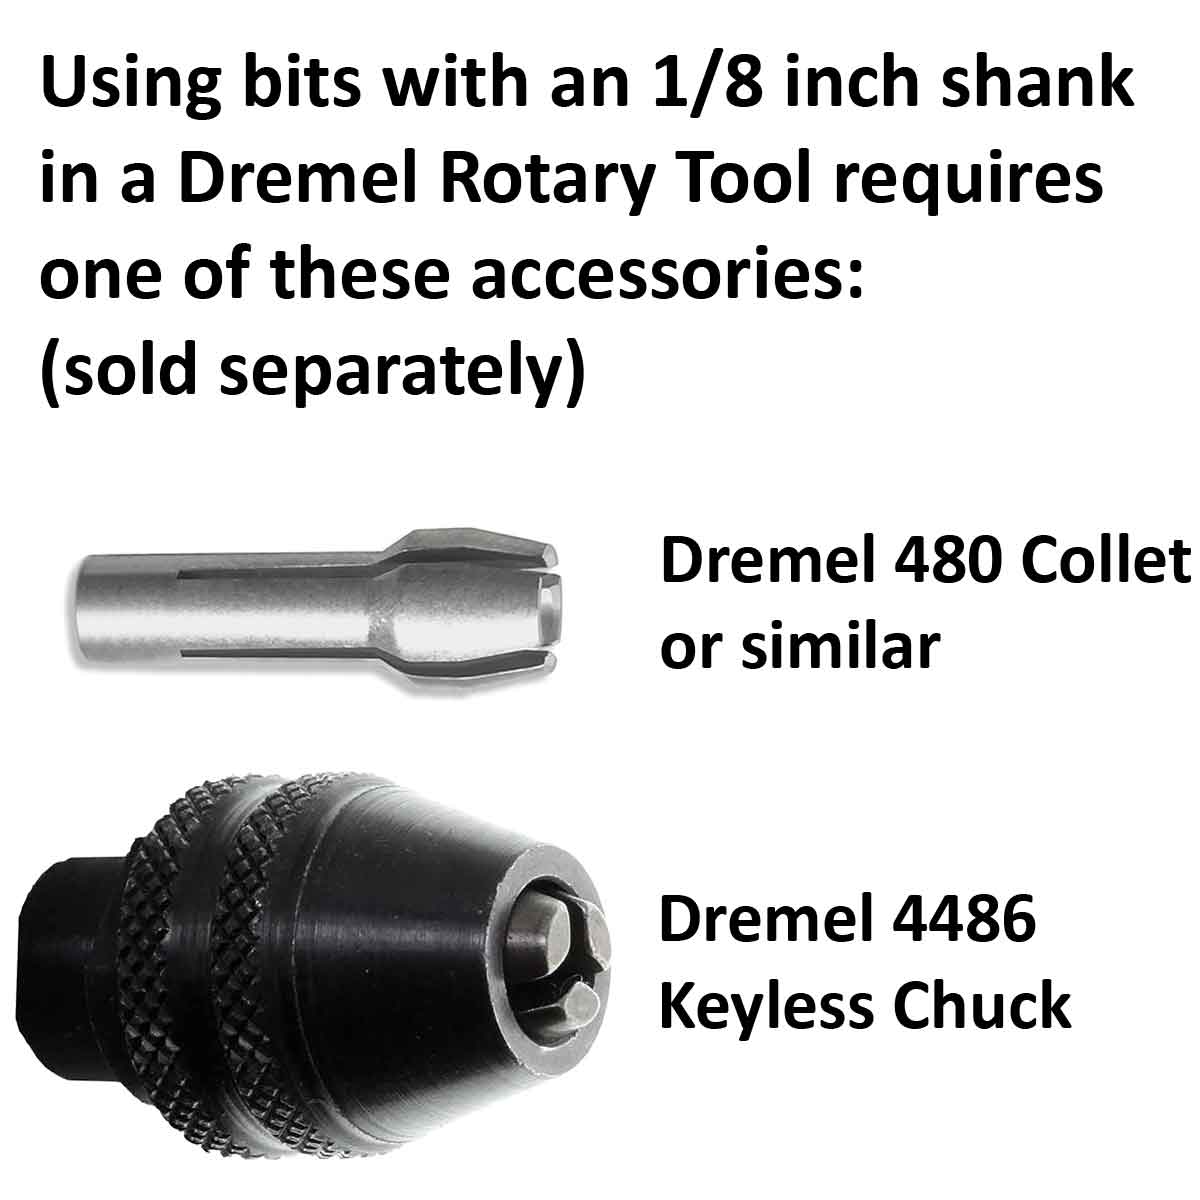 03.2mm - 1/8 x 19/64 inch 150 Grit Cone Diamond Burr - 1/8 inch shank